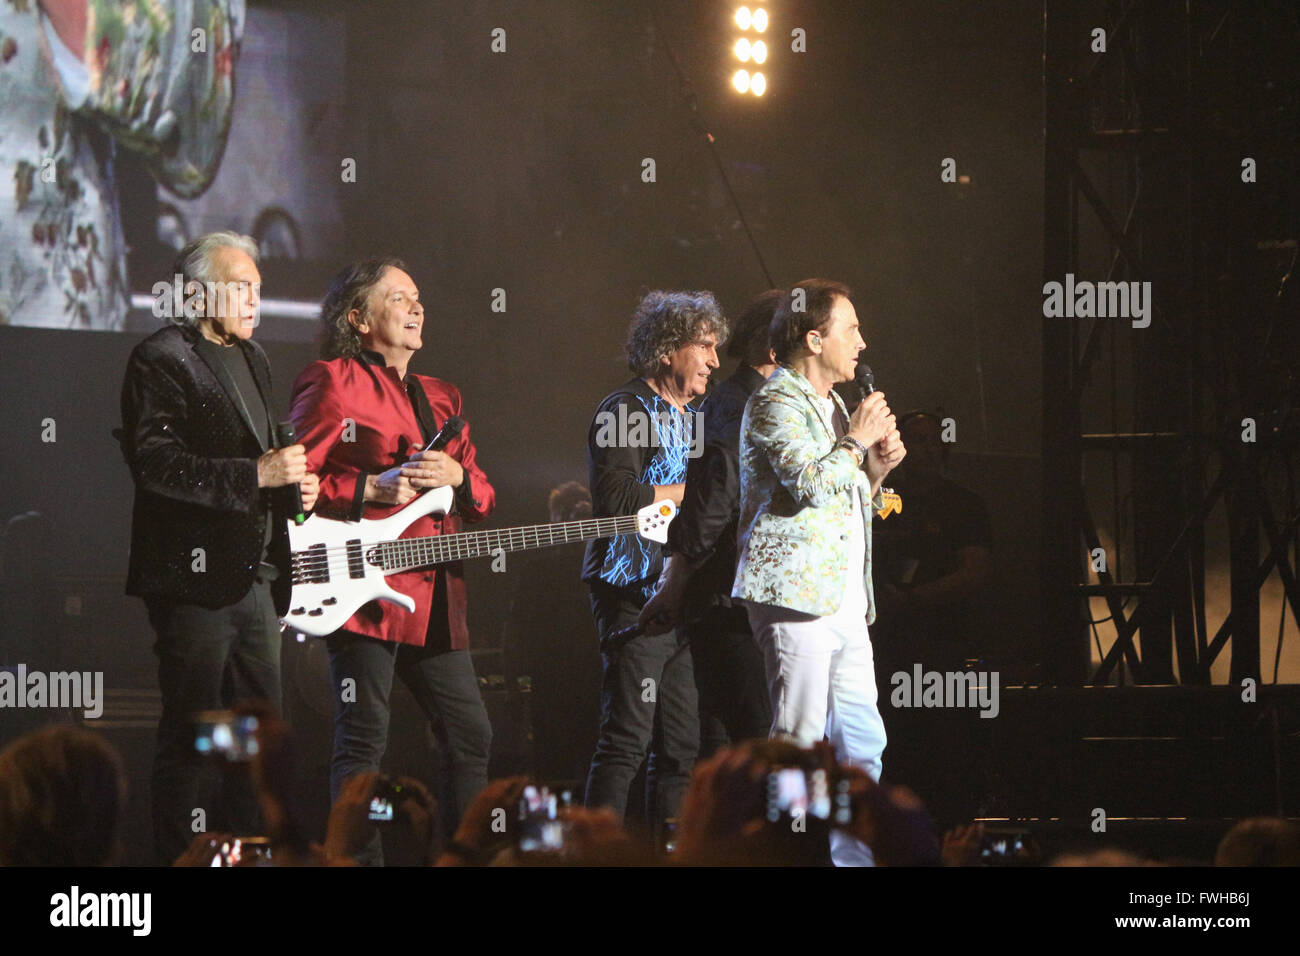 Milan, Italie. Jun 11, 2016. Le groupe de rock italien ourson sur scène à Milan, Italie. Credit : Luca Quadrio/Alamy Live News. Banque D'Images